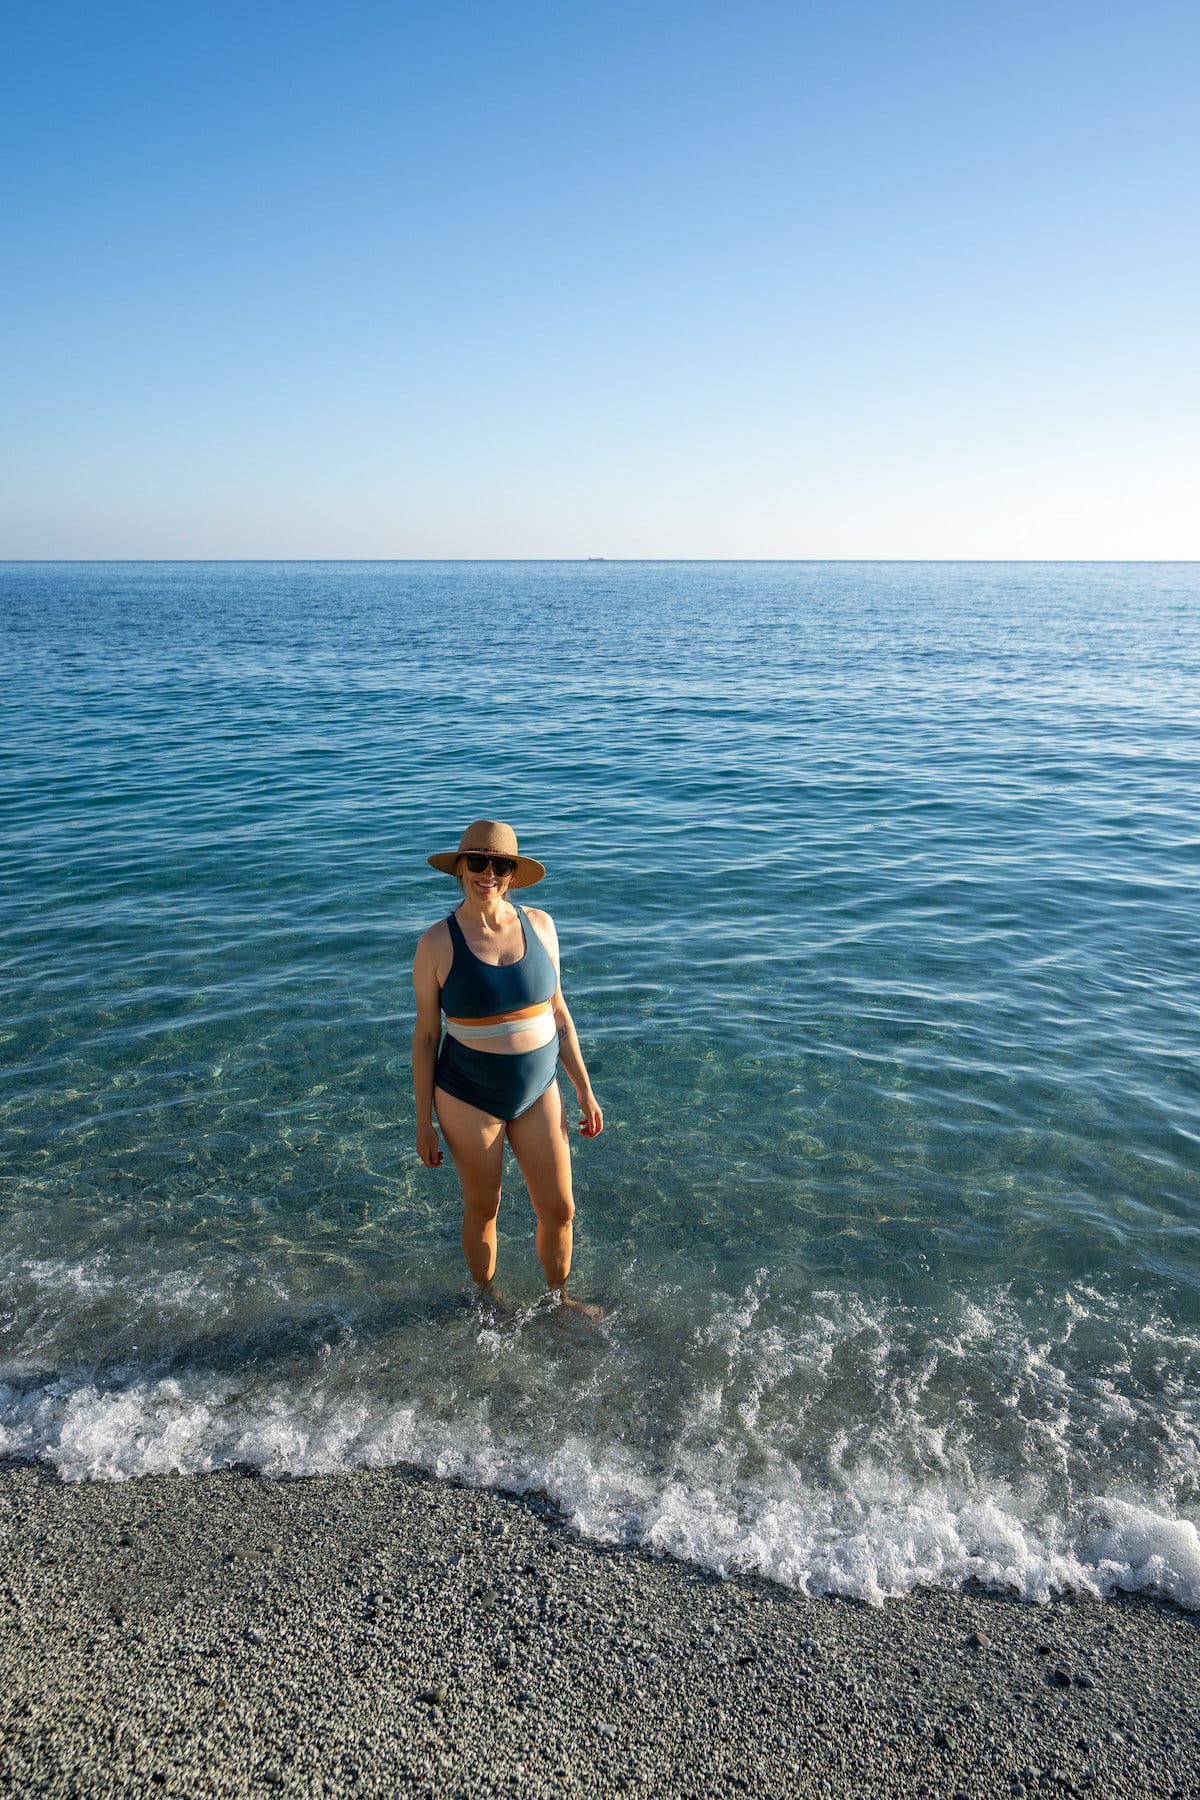 Kristen Bor wearing the Nani Swimwear Bikini top and ruched bottoms in the sea in Italy